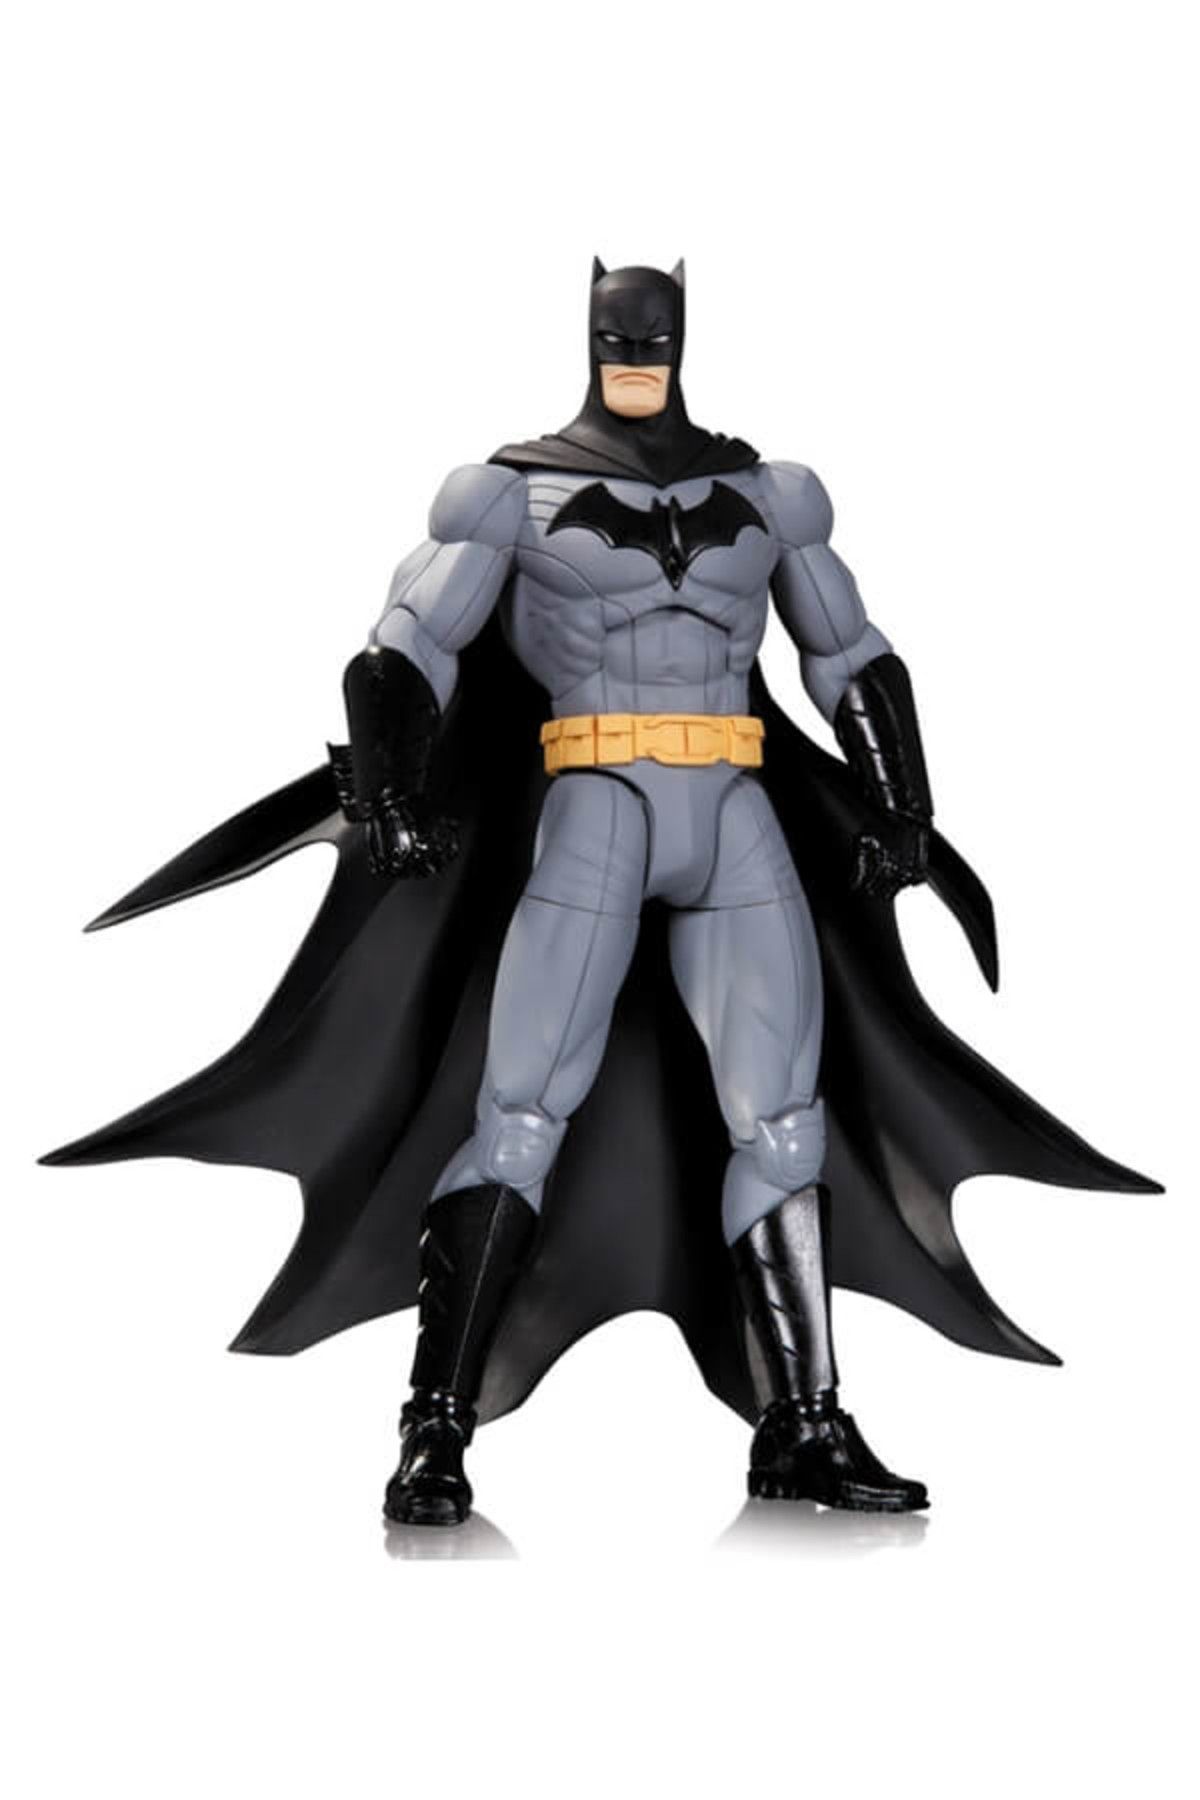 DC Collectibles Greg Capullo Batman Action Figure